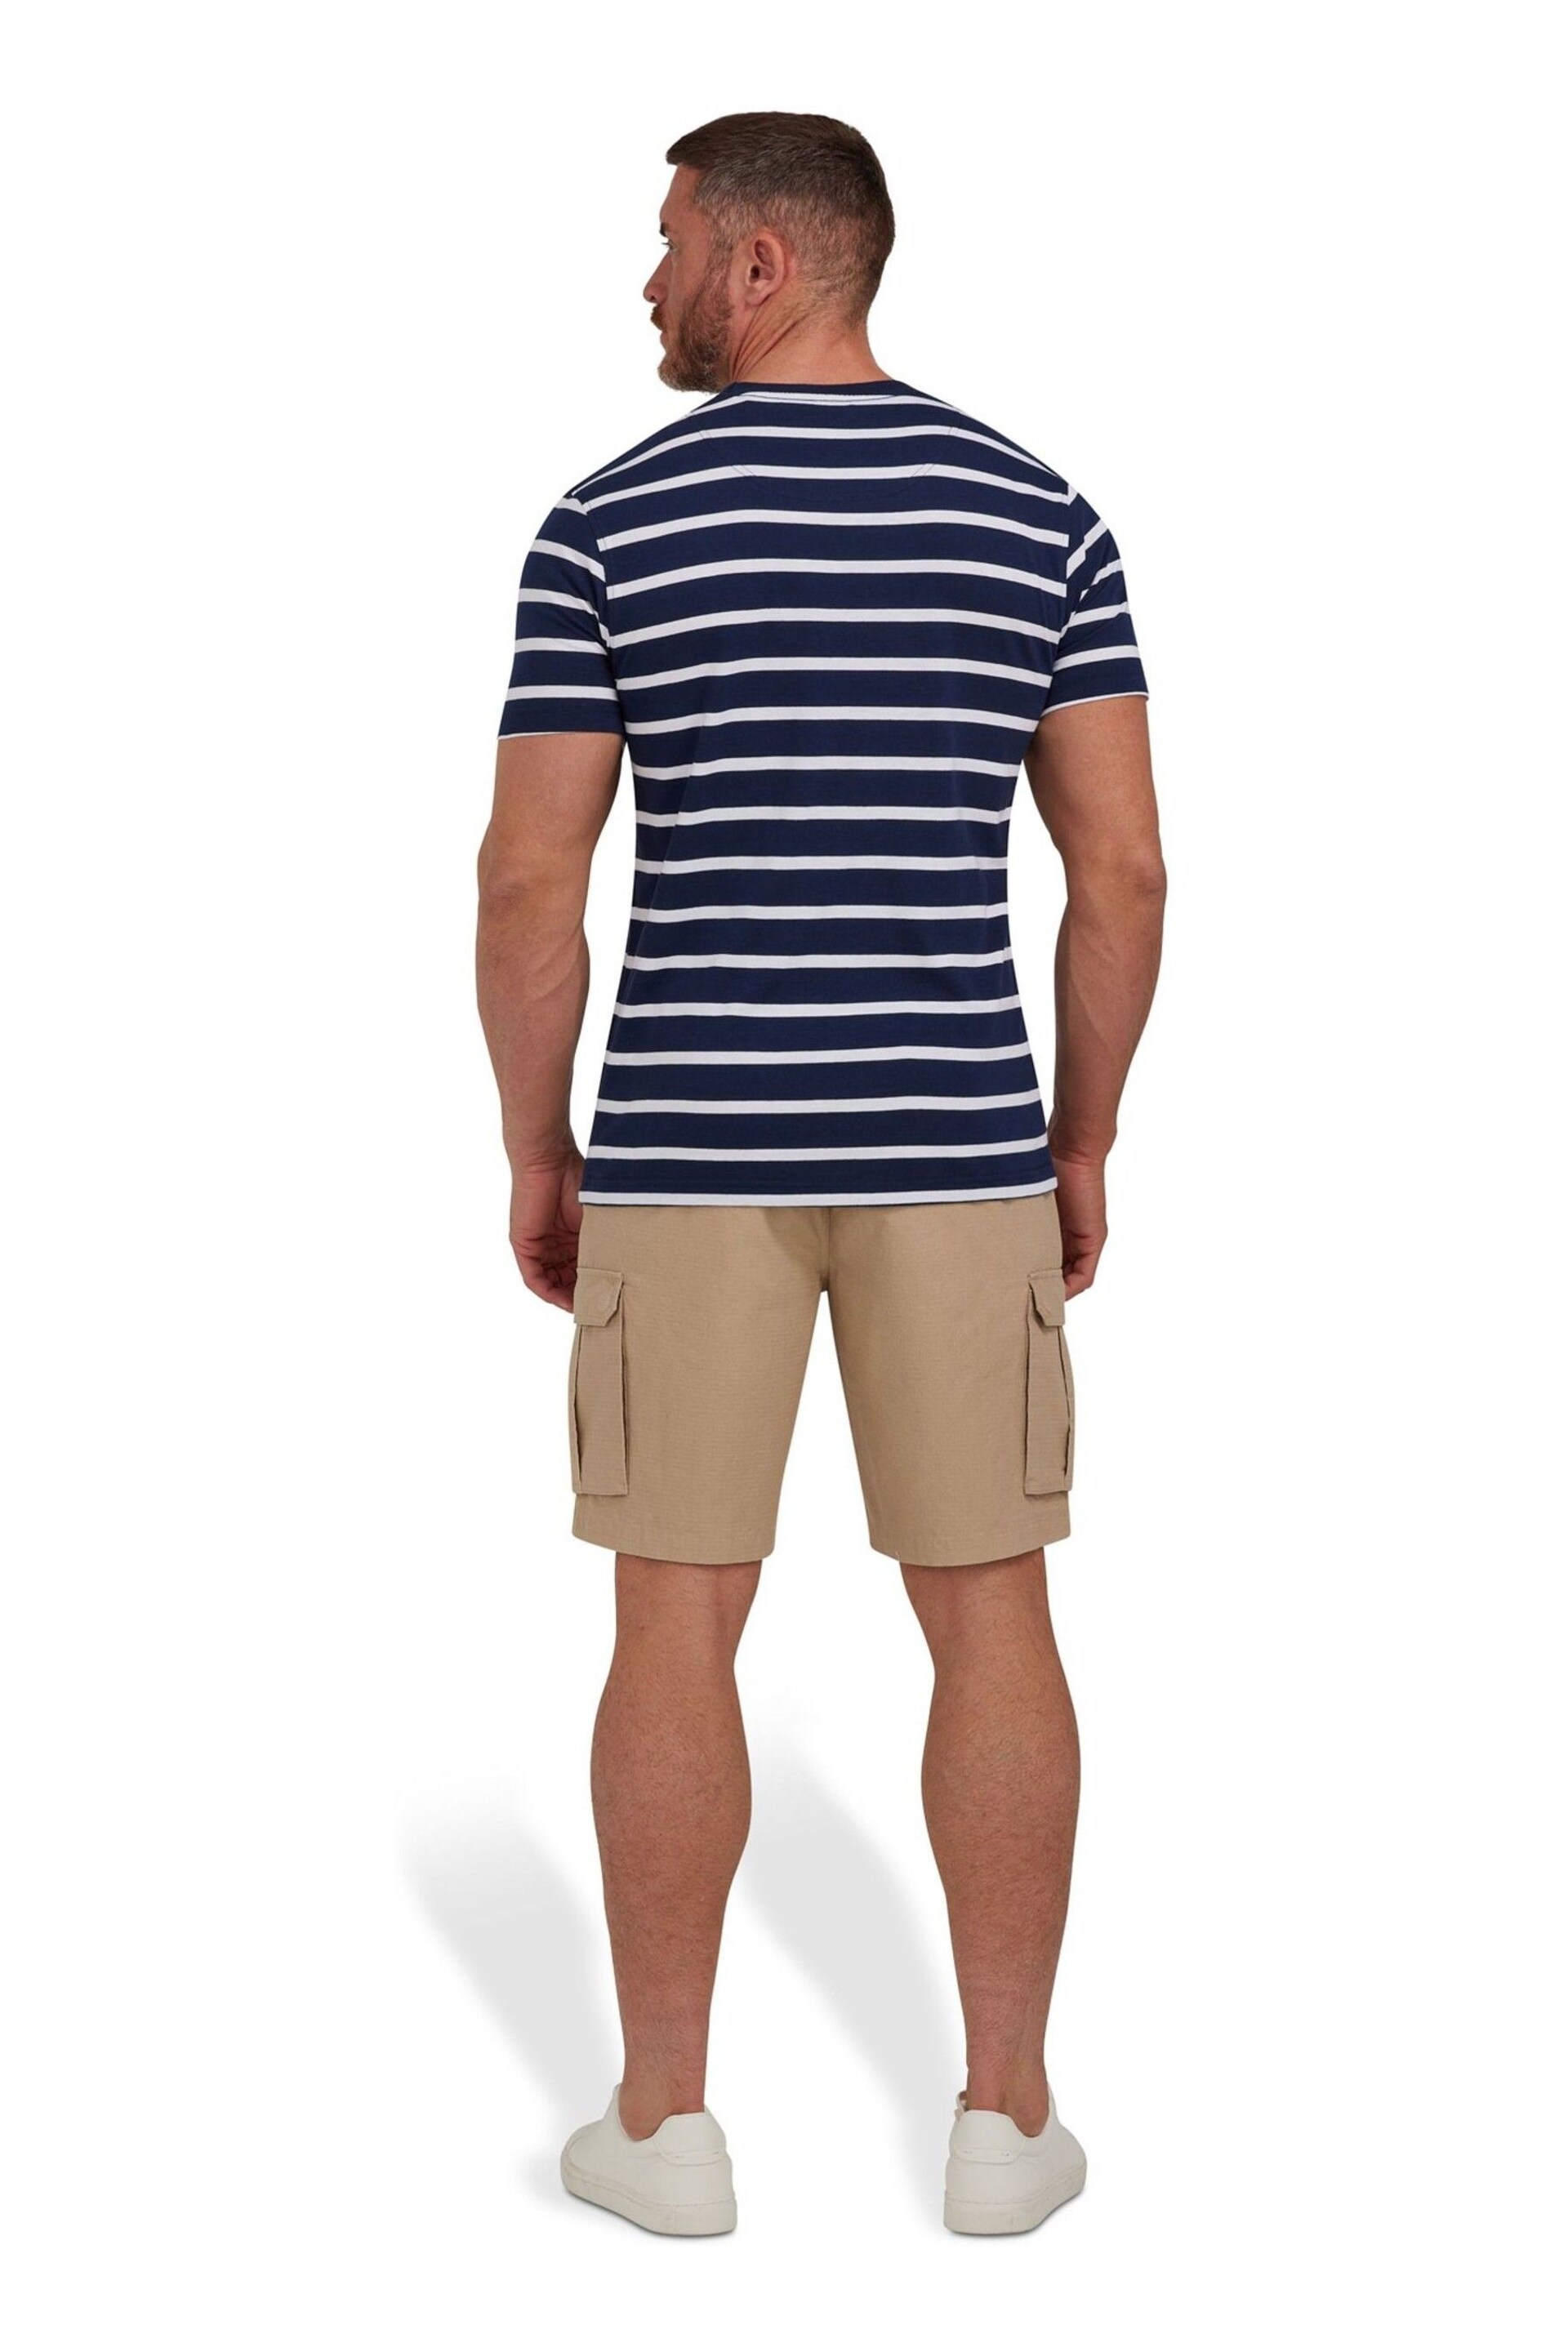 Raging Bull Blue Breton Stripe T-Shirt - Image 5 of 10